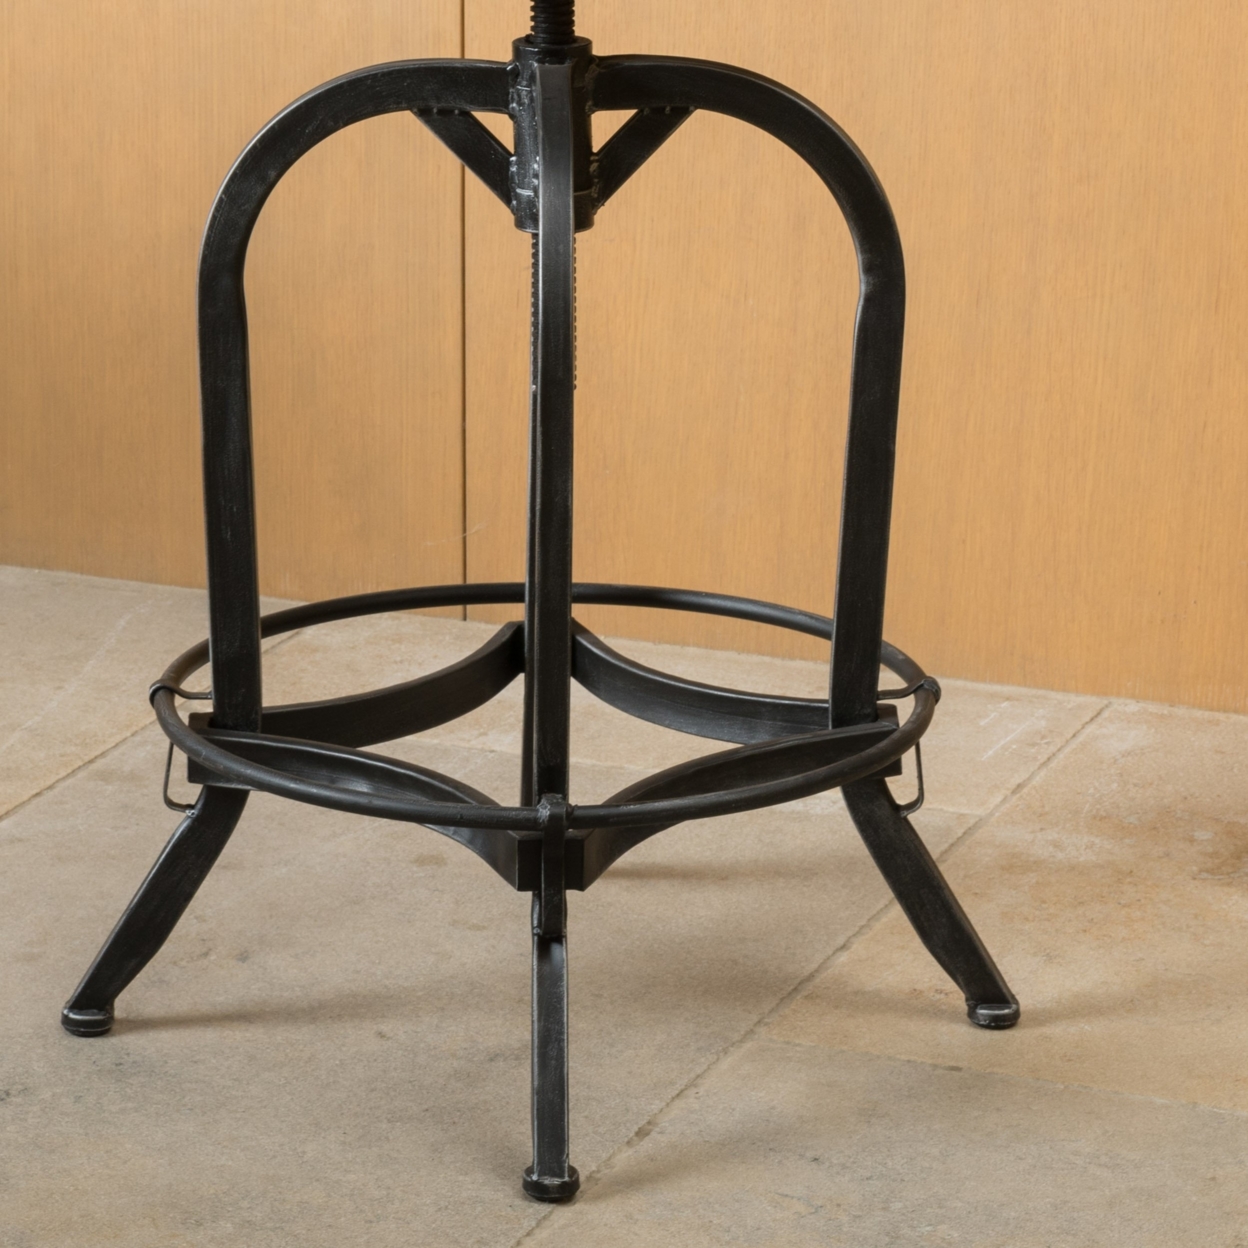 Samthorn Metal Industrial Adjustable Barstool With Backrest